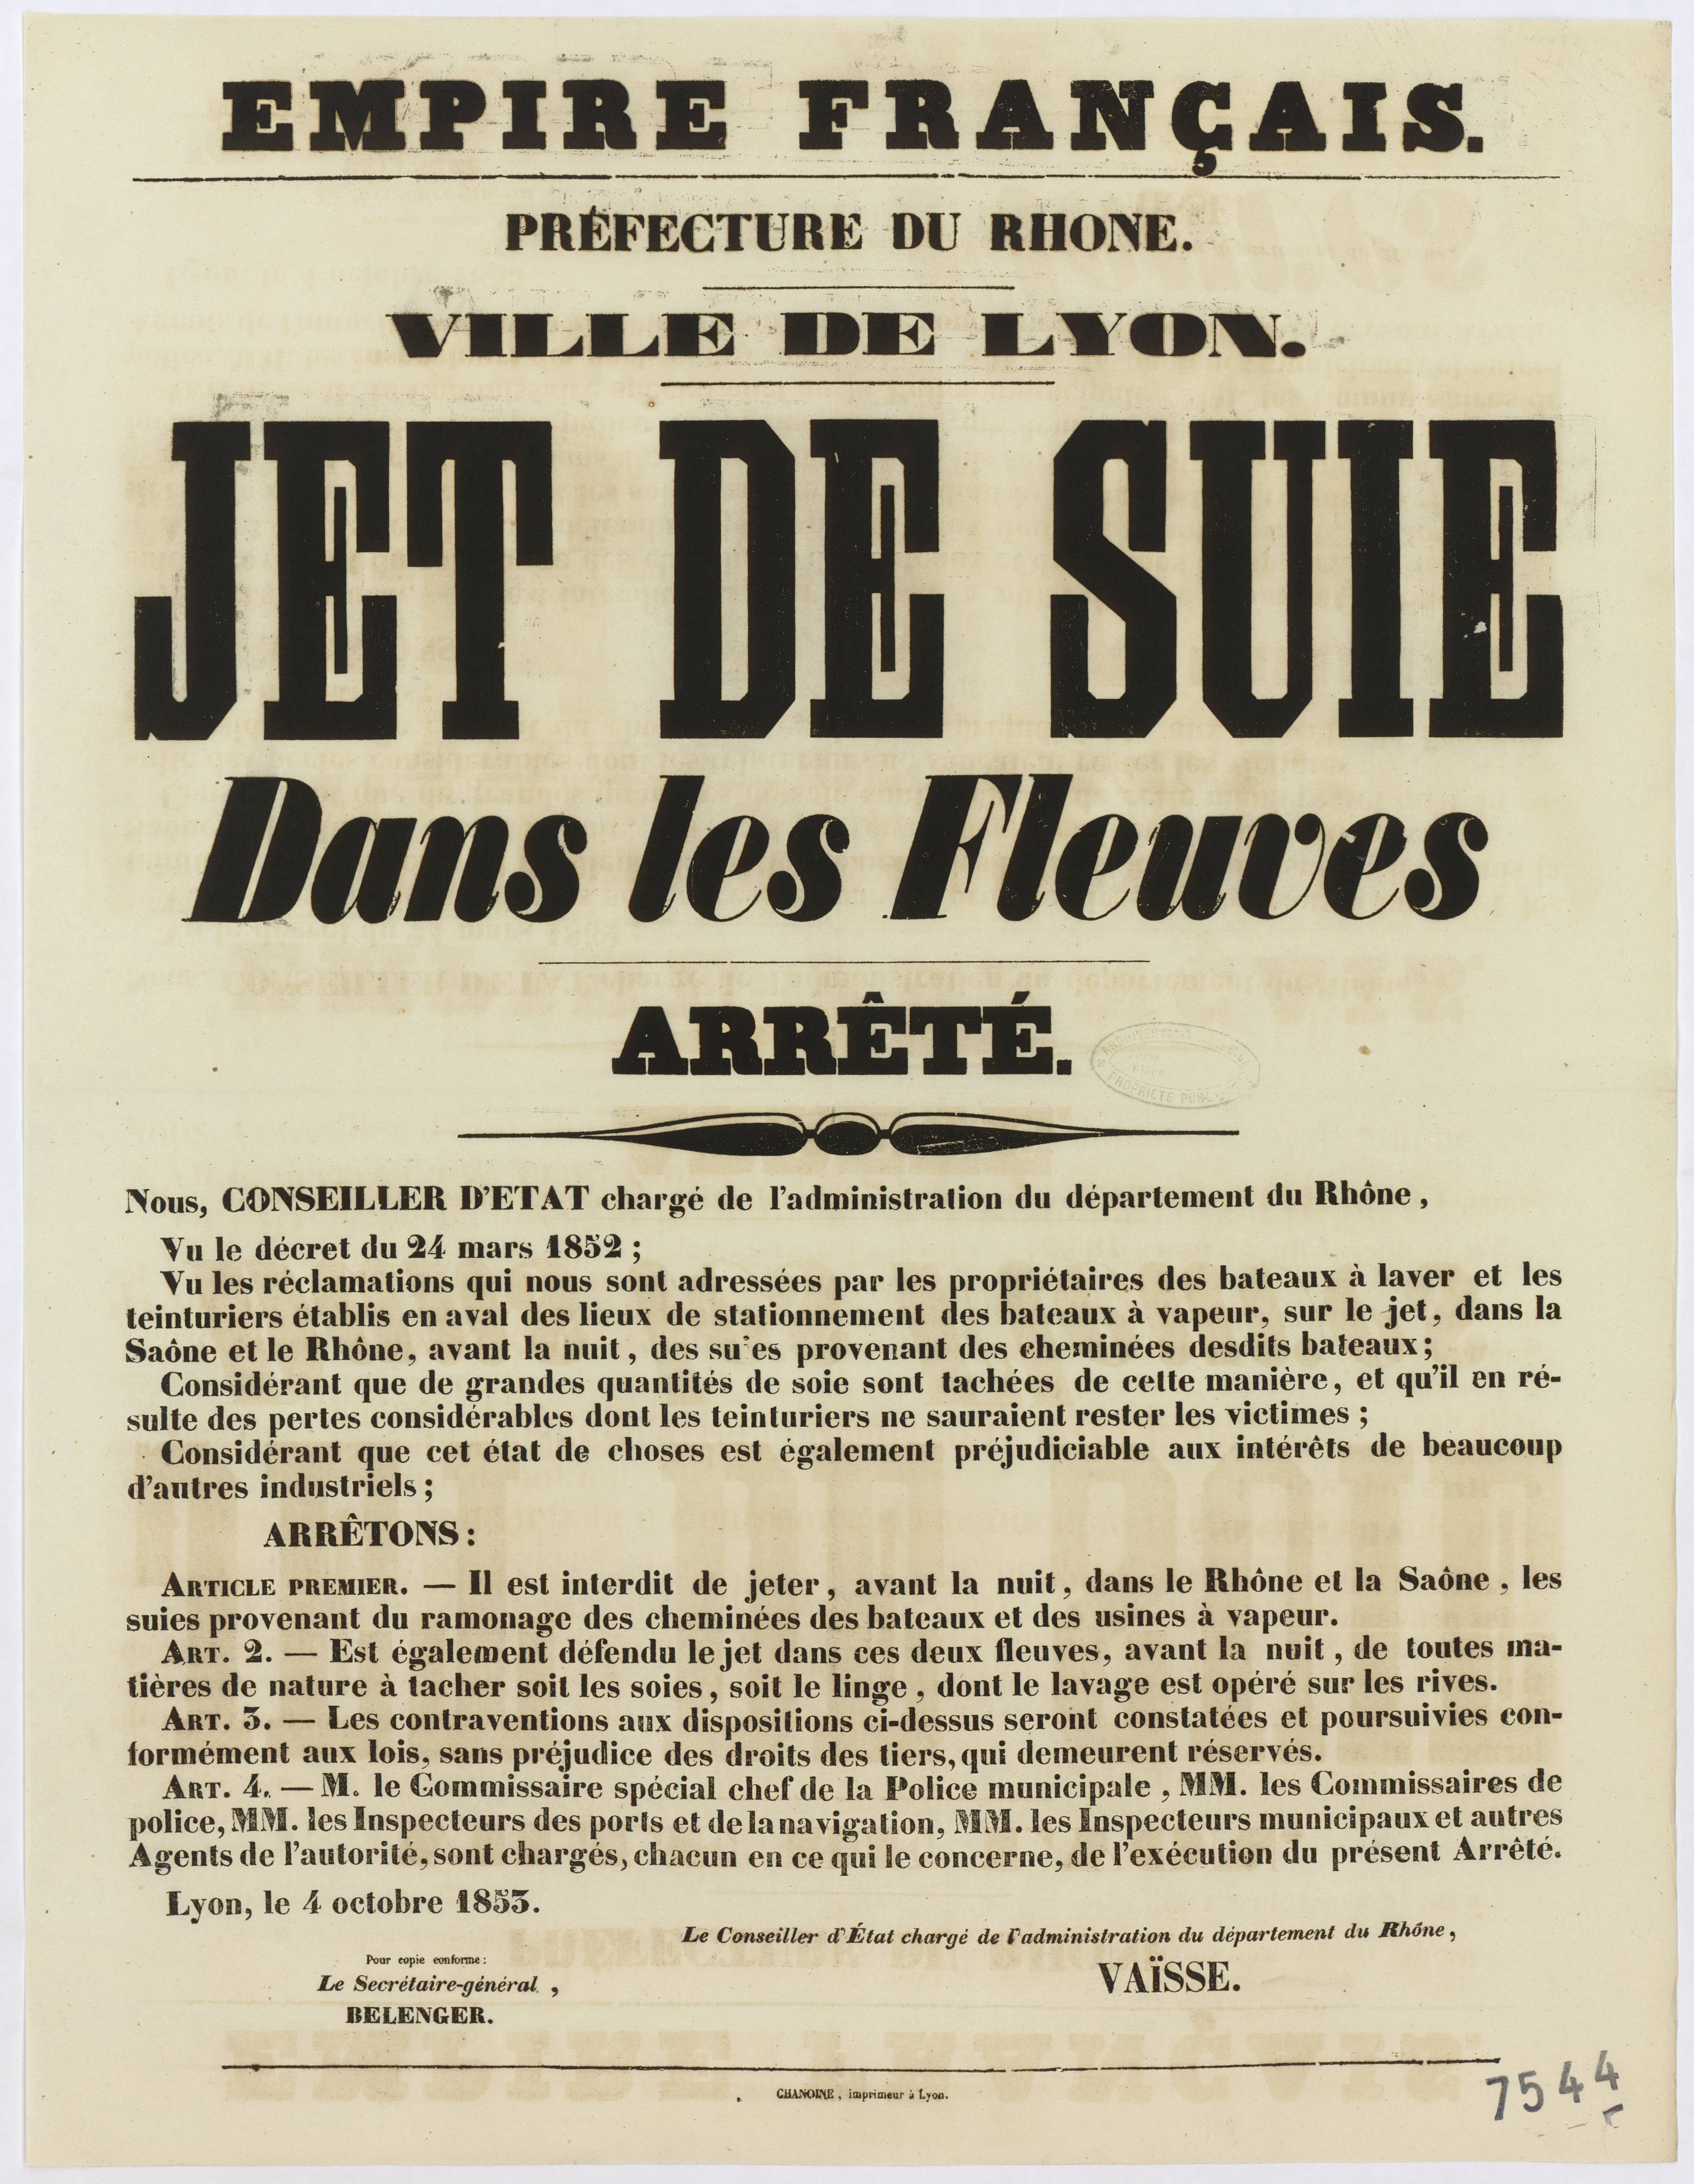 Arrêté du préfet concernant les jets de suie dans le Rhône et la Saône : affiche administrative (04/10/1853, cote : 936W7544)